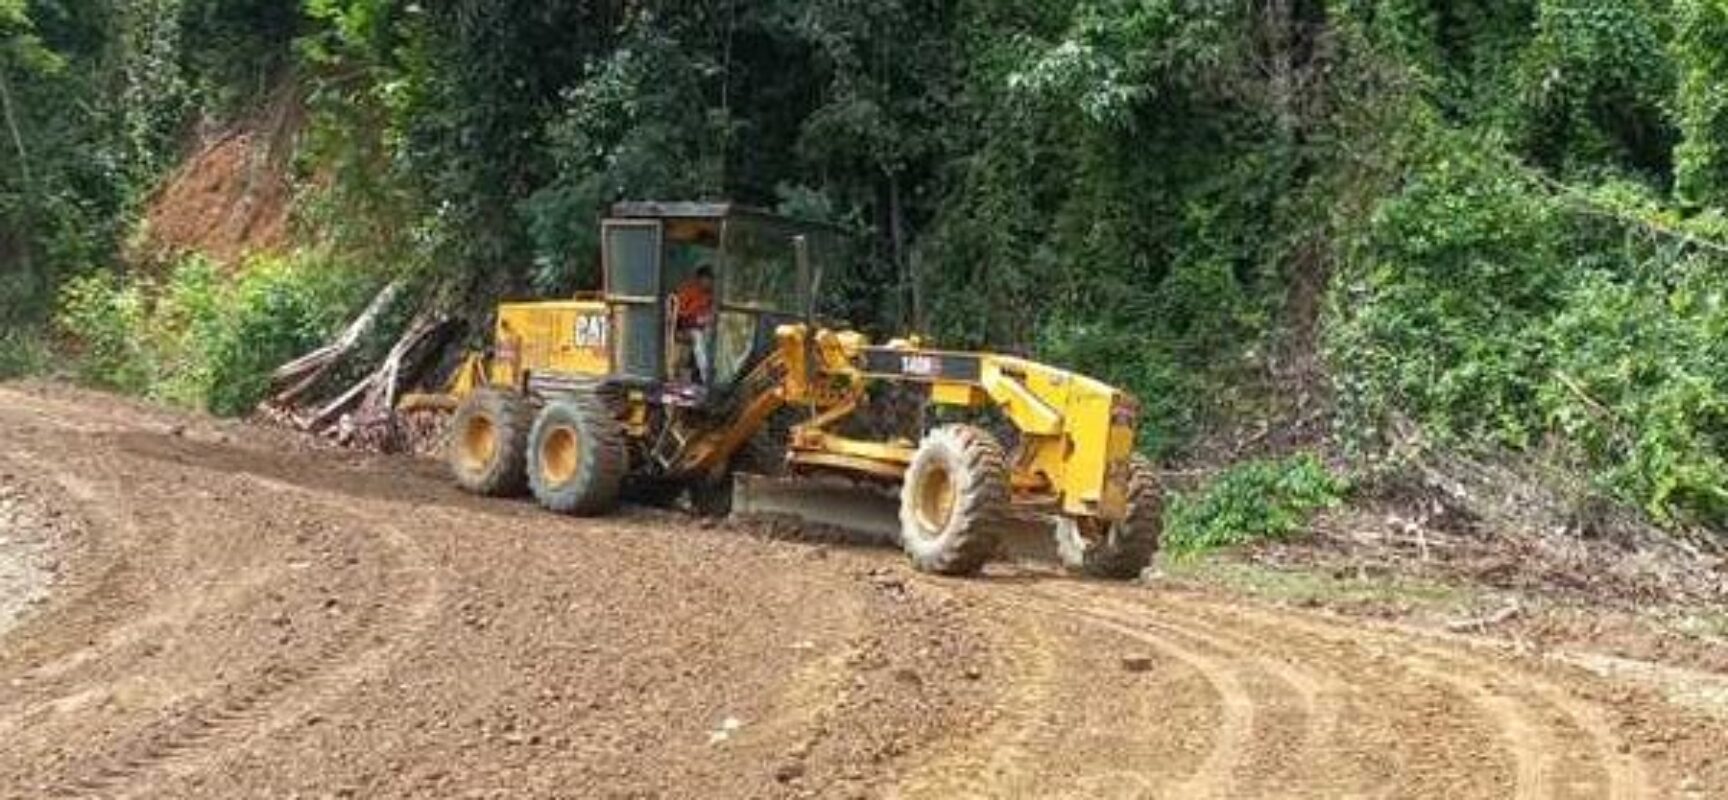 Prefeitura de Ilhéus intensifica manutenção das estradas rurais; veja as localidades atendidas